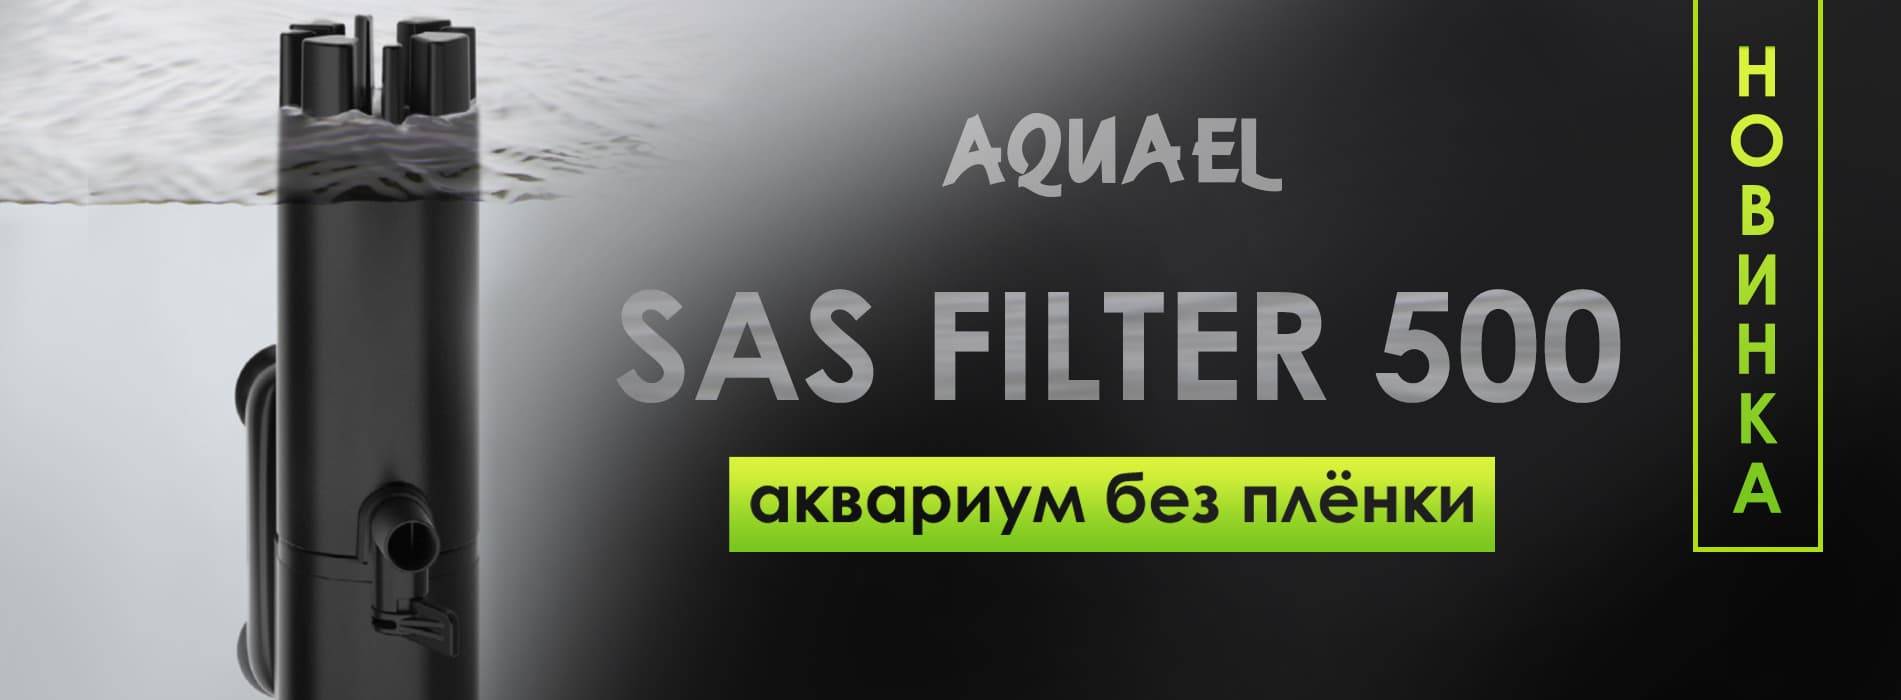 Sas Filter